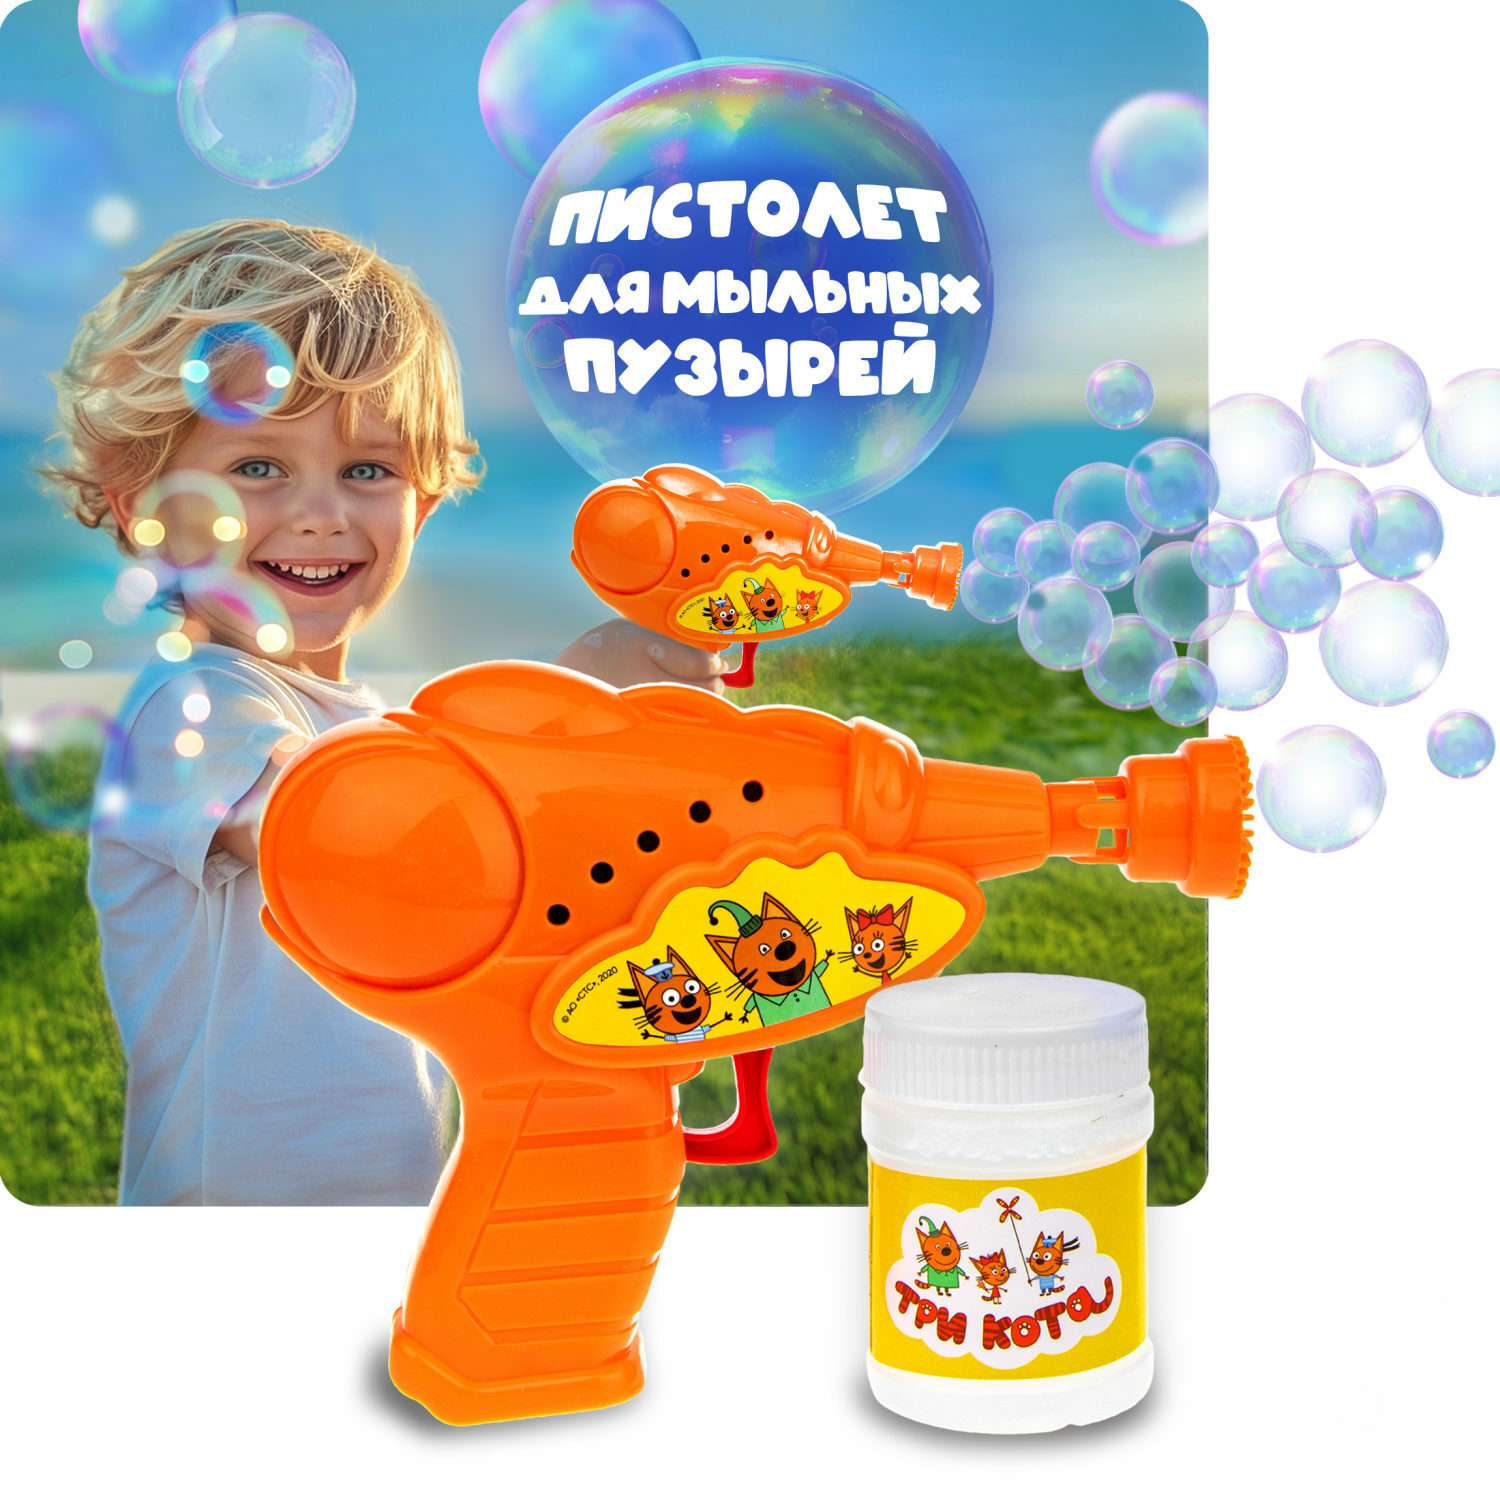 Генератор мыльных пузырей Три кота 1YOY с раствором пистолет бластер аппарат детские игрушки для улицы и дома - фото 1